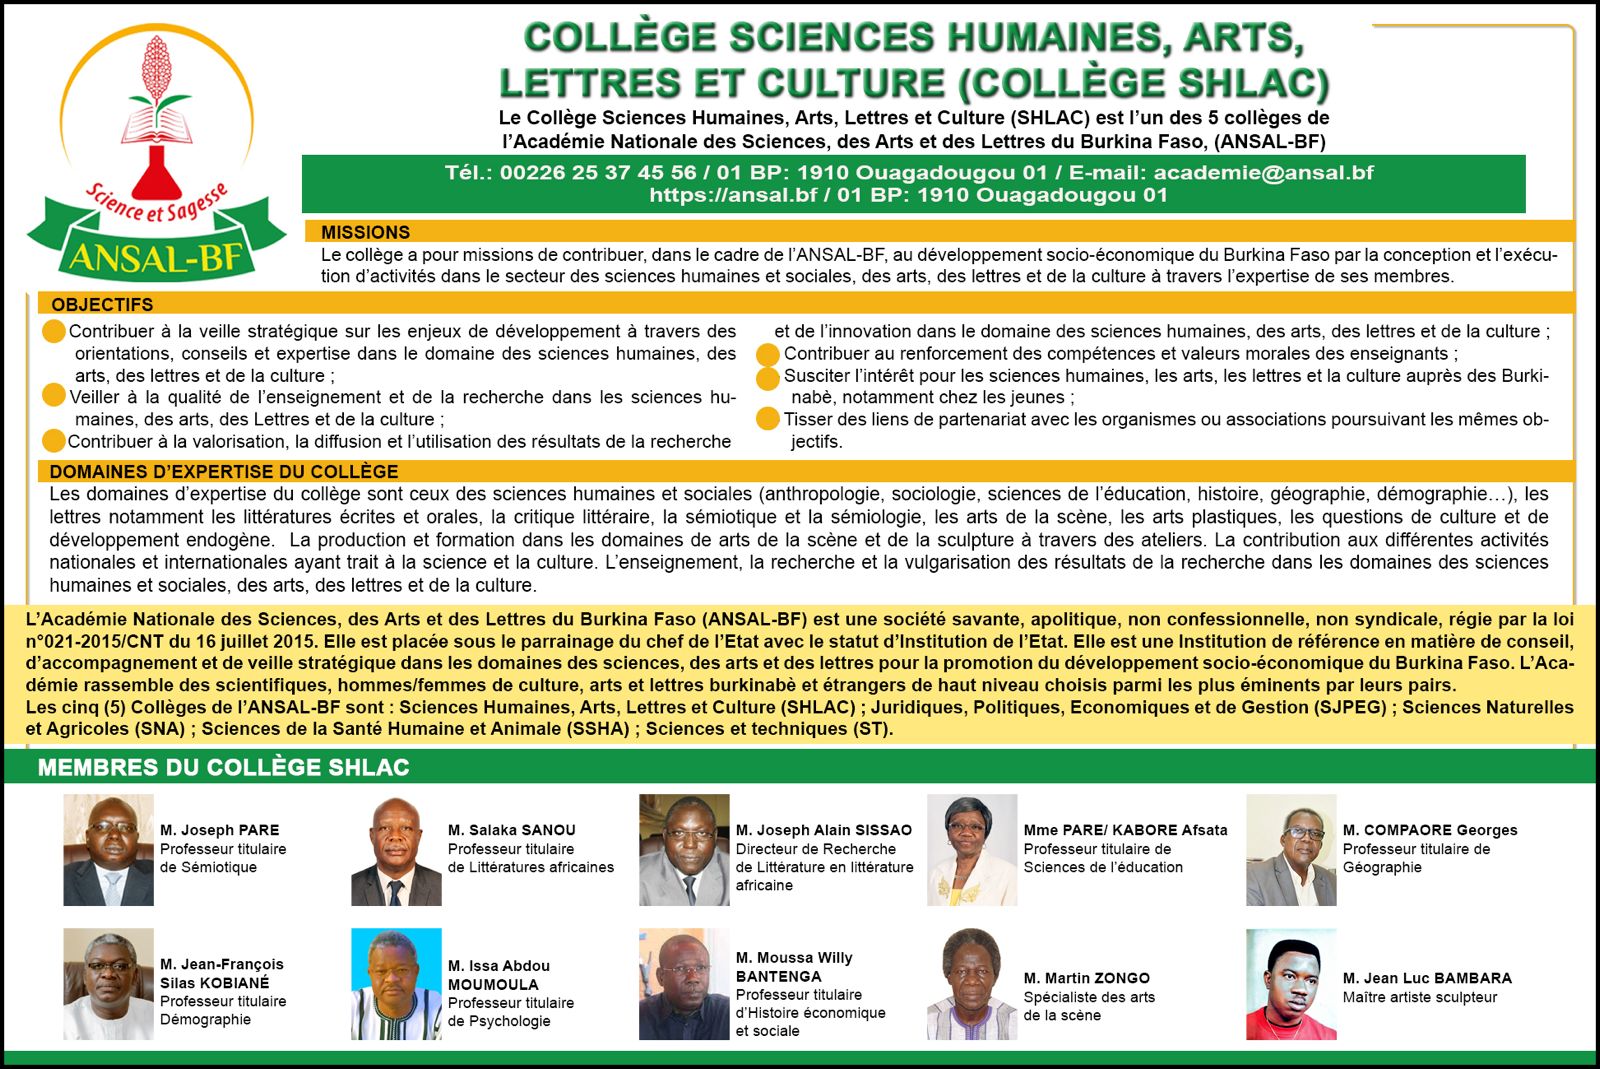 Le Collège Sciences Humaines, Arts, Lettres et Culture, l’un des 5 collèges de l’Académie Nationale des Sciences, des Arts et des Lettres du Burkina